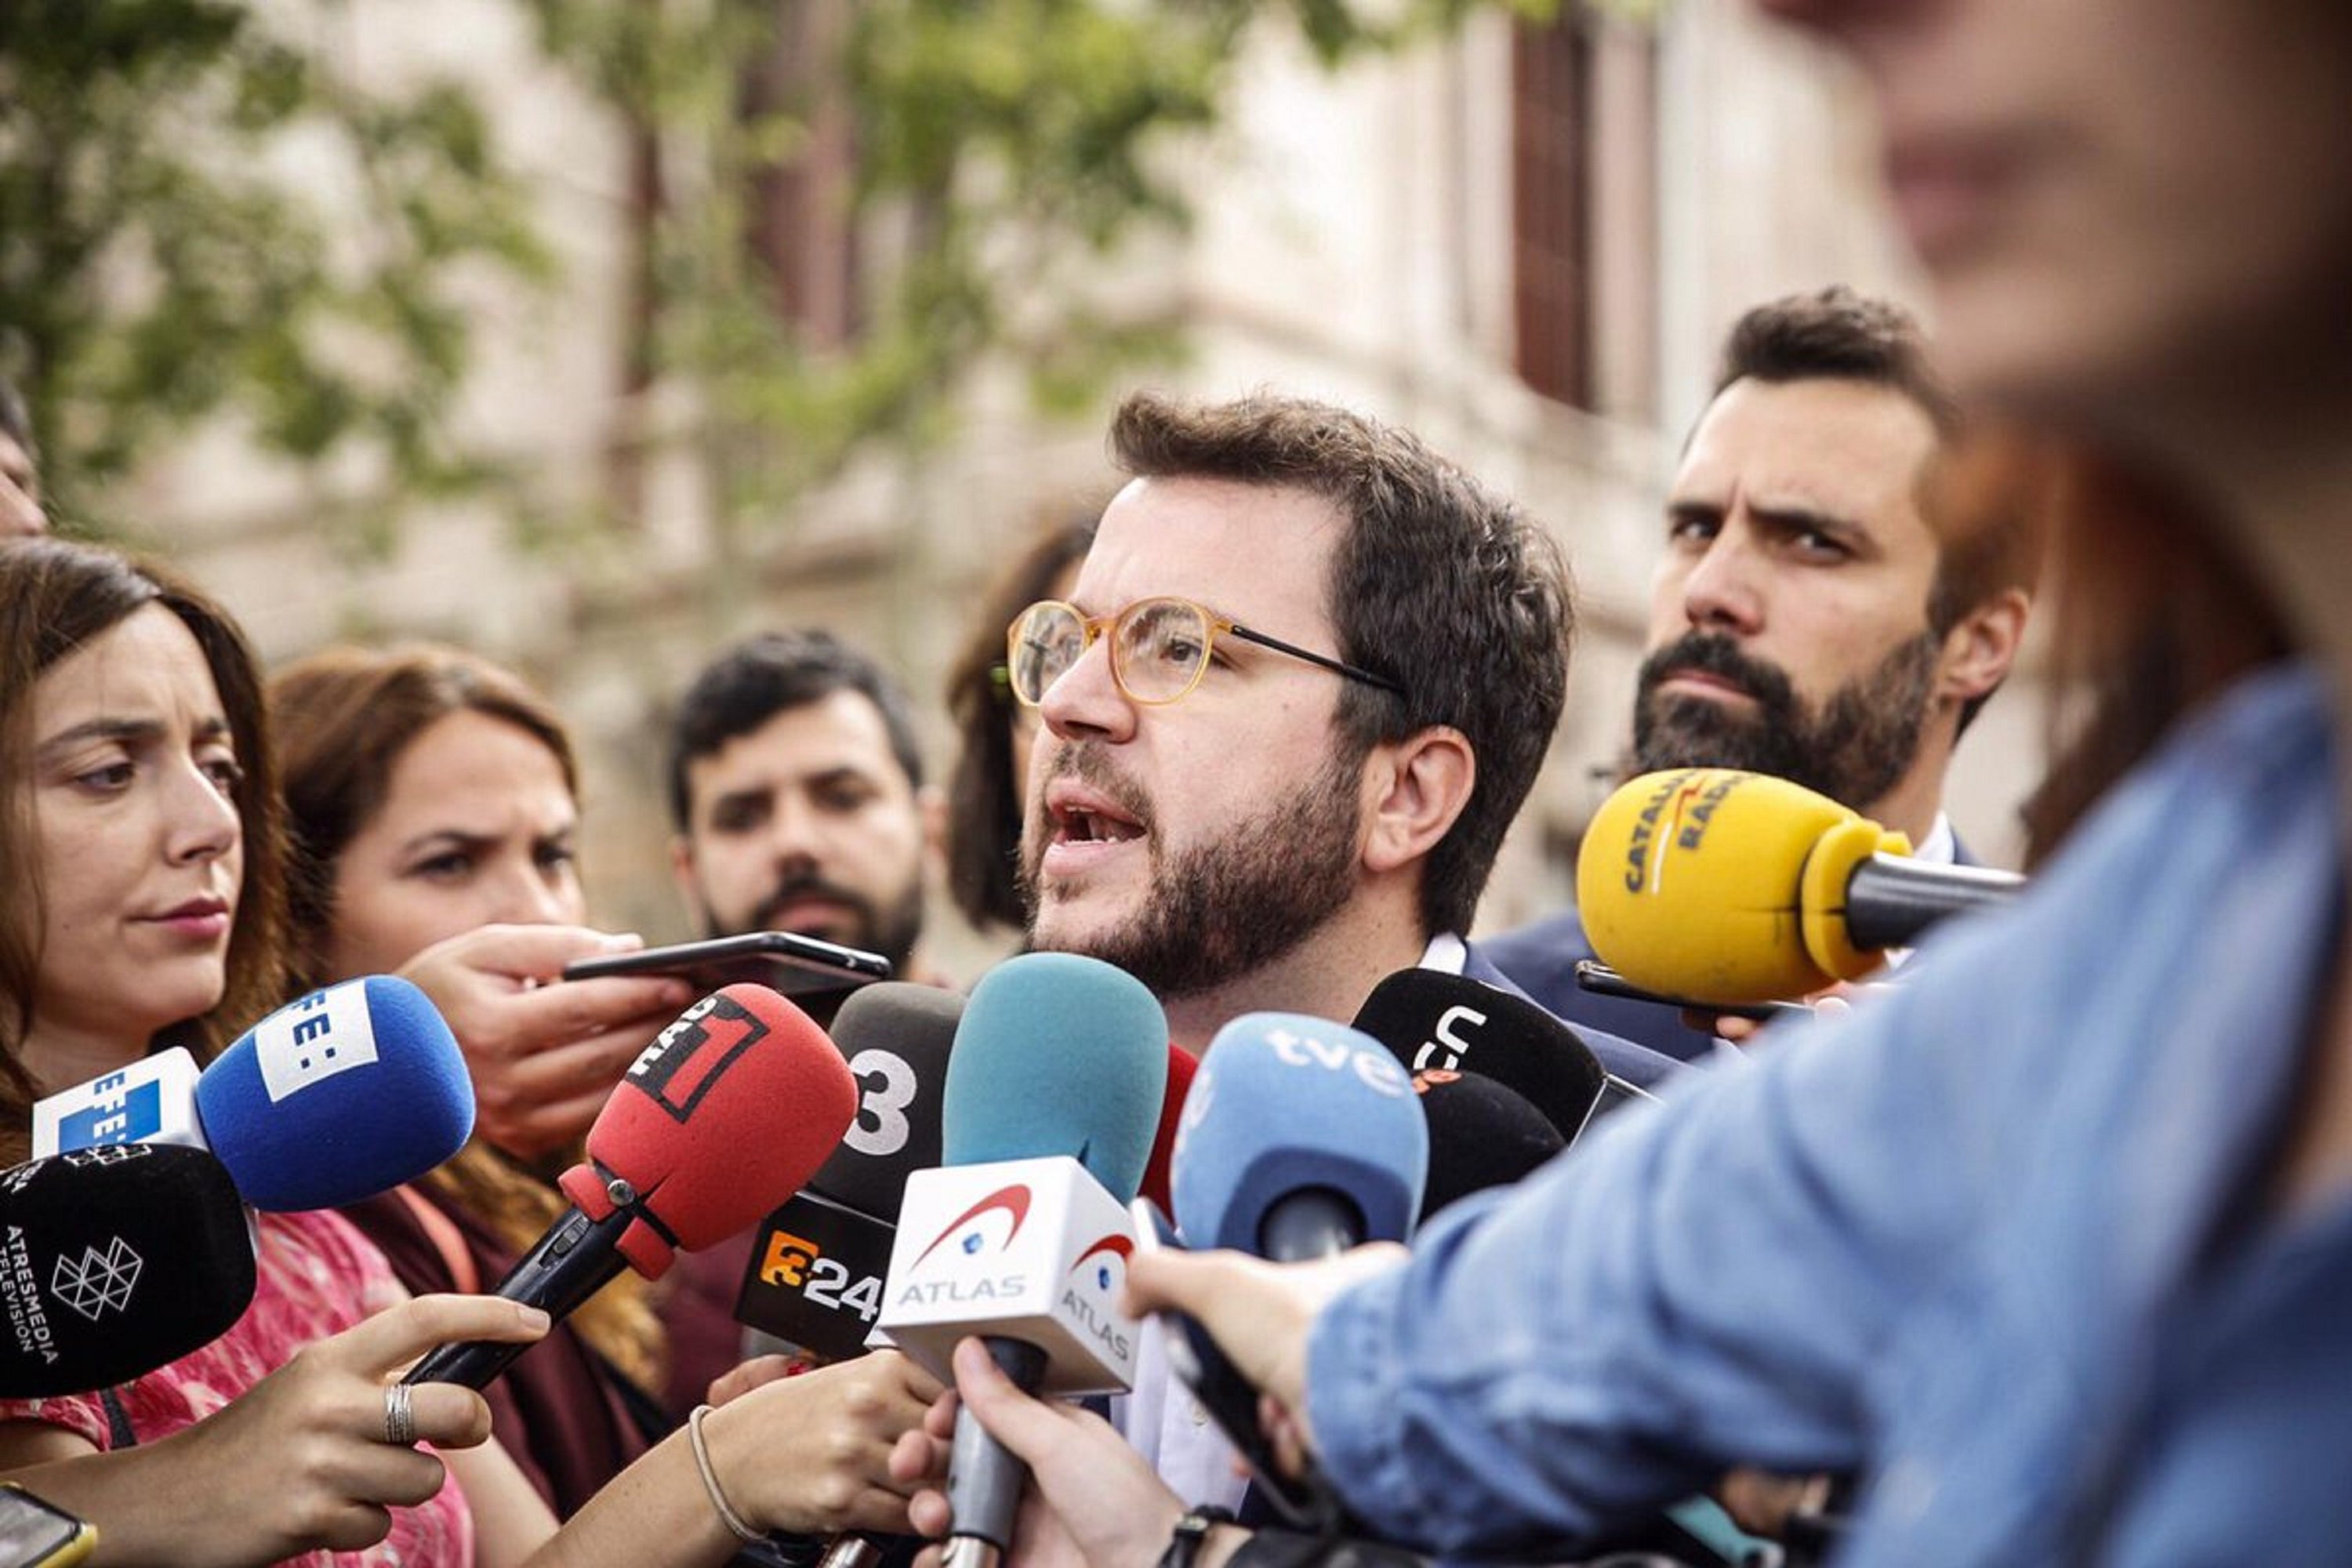 Aragonès avisa que l’independentisme no renunciarà “mai als seus objectius"